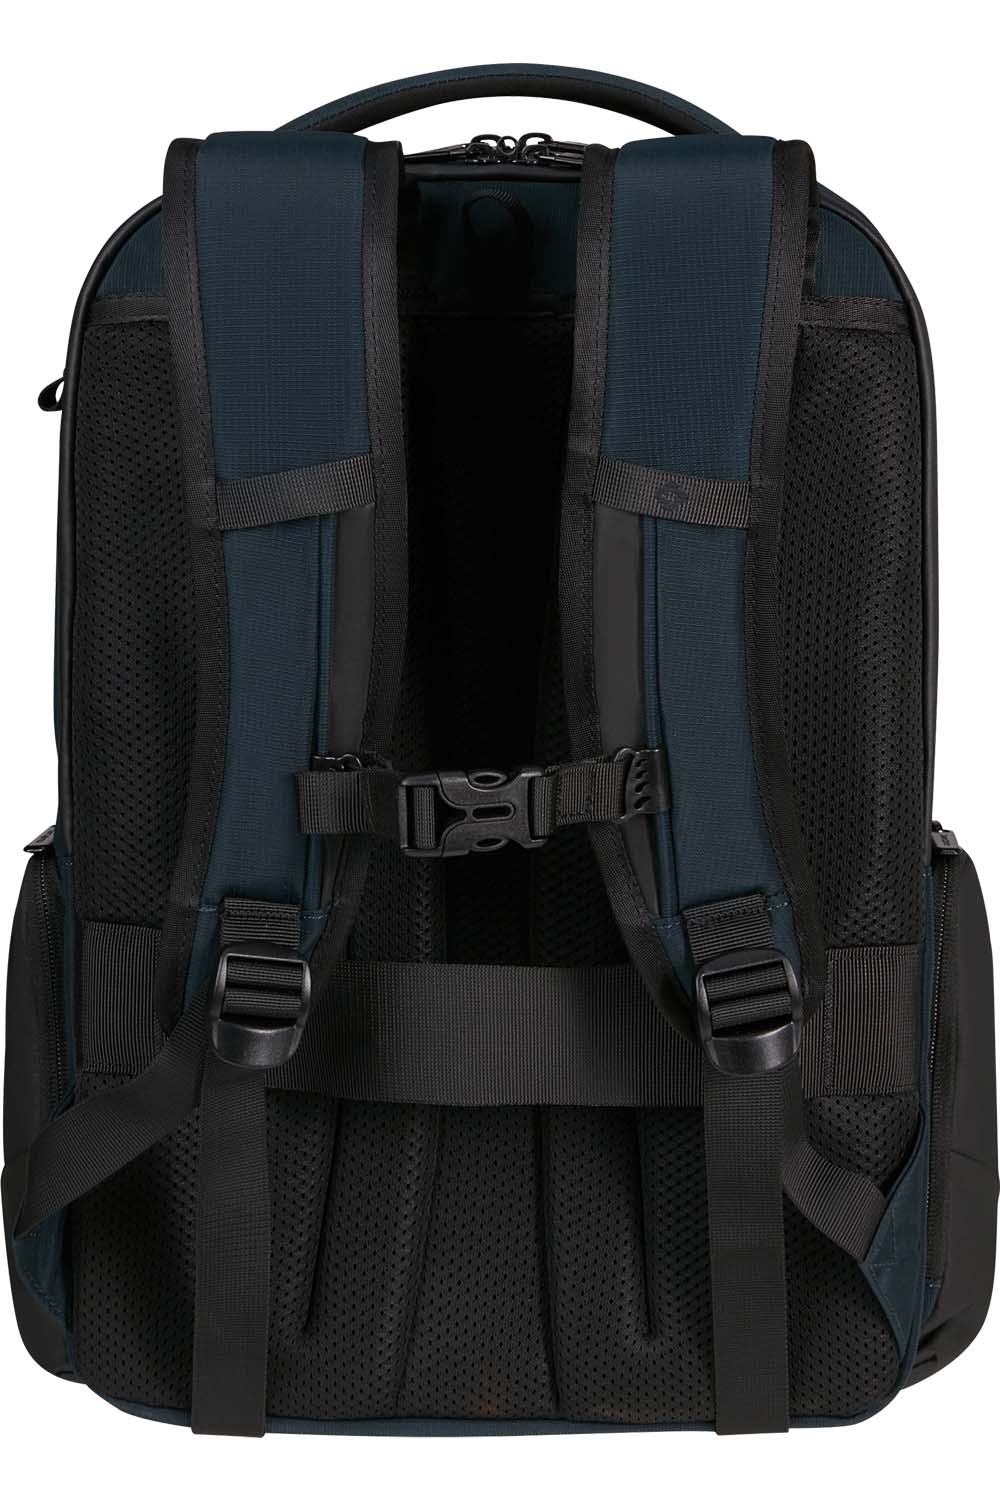 Samsonite Biz2go Backpack תיק גב למחשב נייד 14.1"